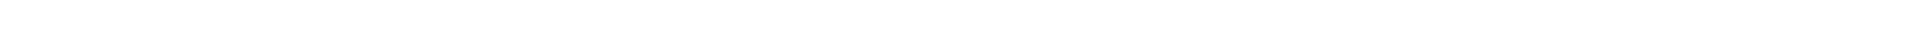 삼성전자 로고